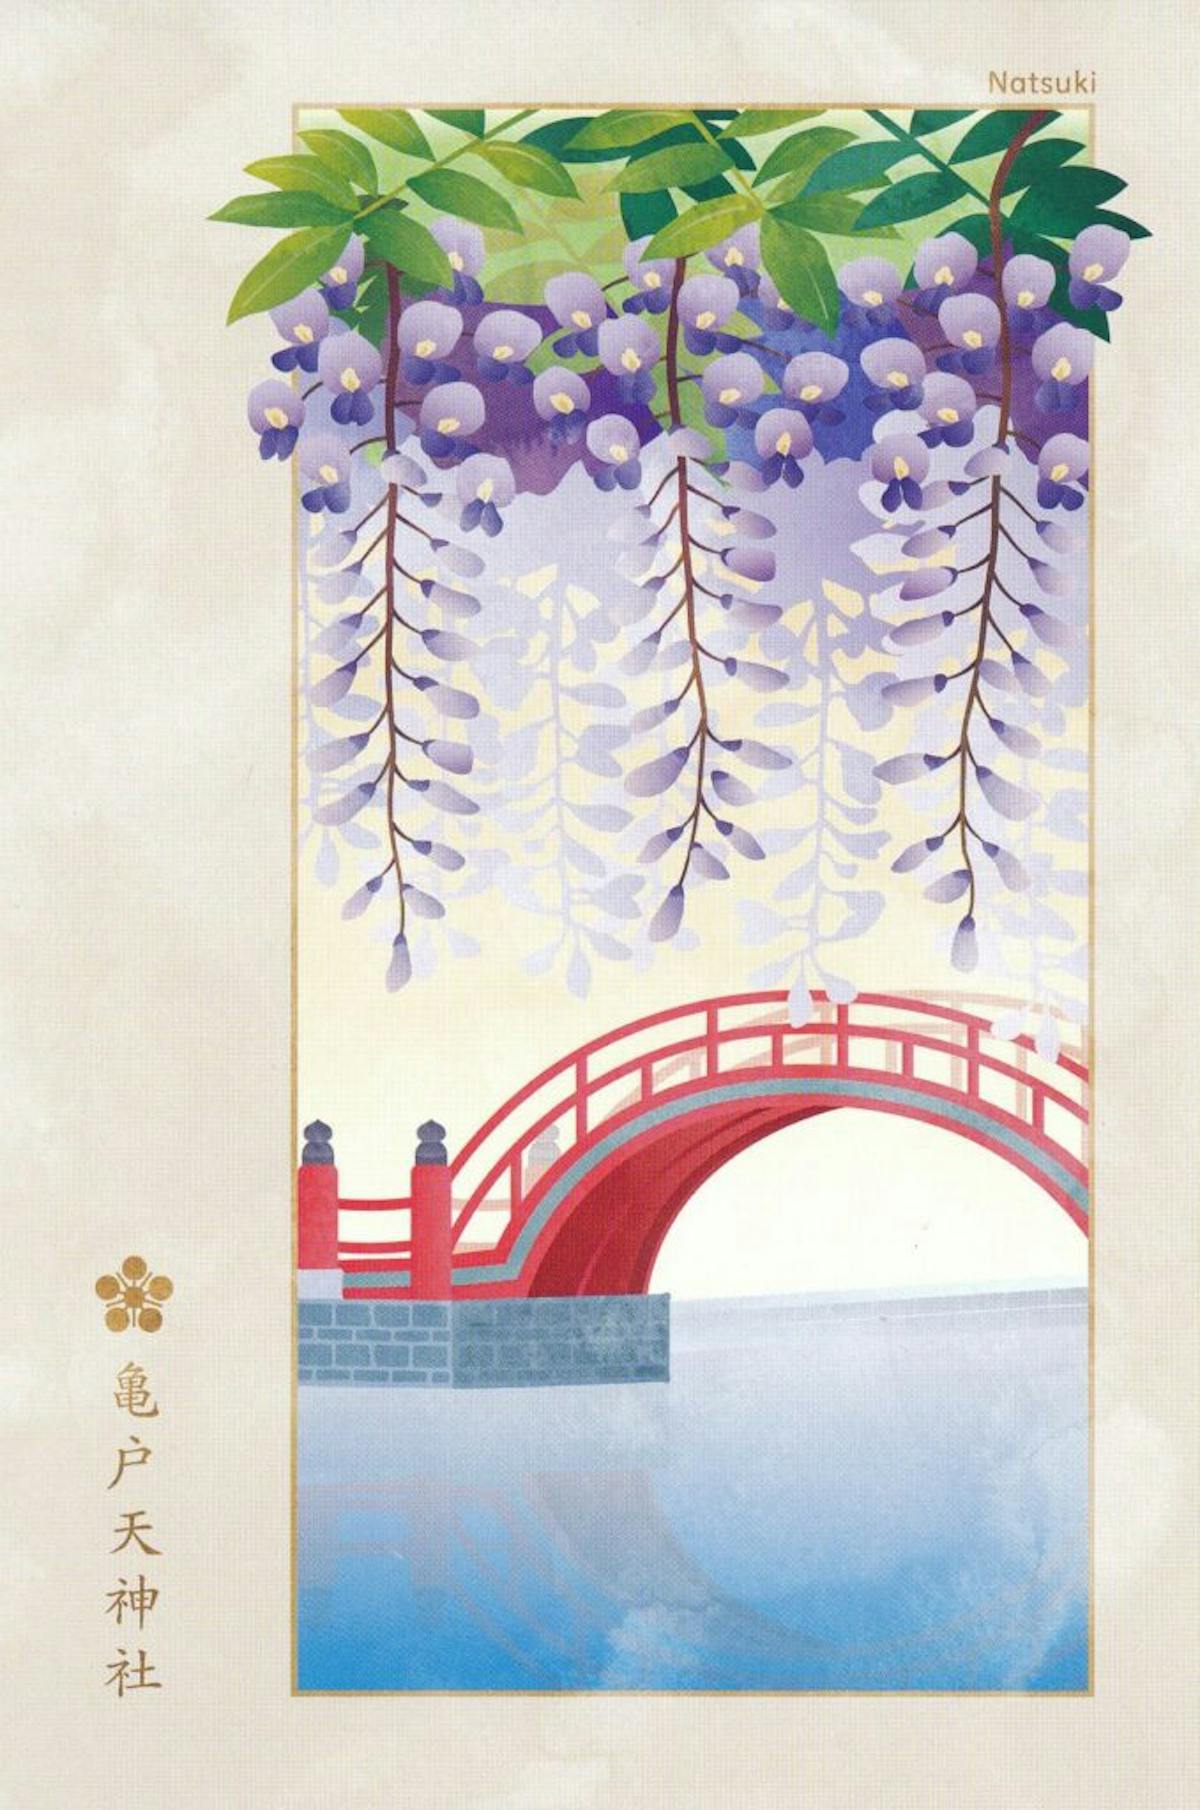 期間限定 亀戸天神社で 藤まつり の御朱印を手に入れよう オマツリジャパン 毎日 祭日